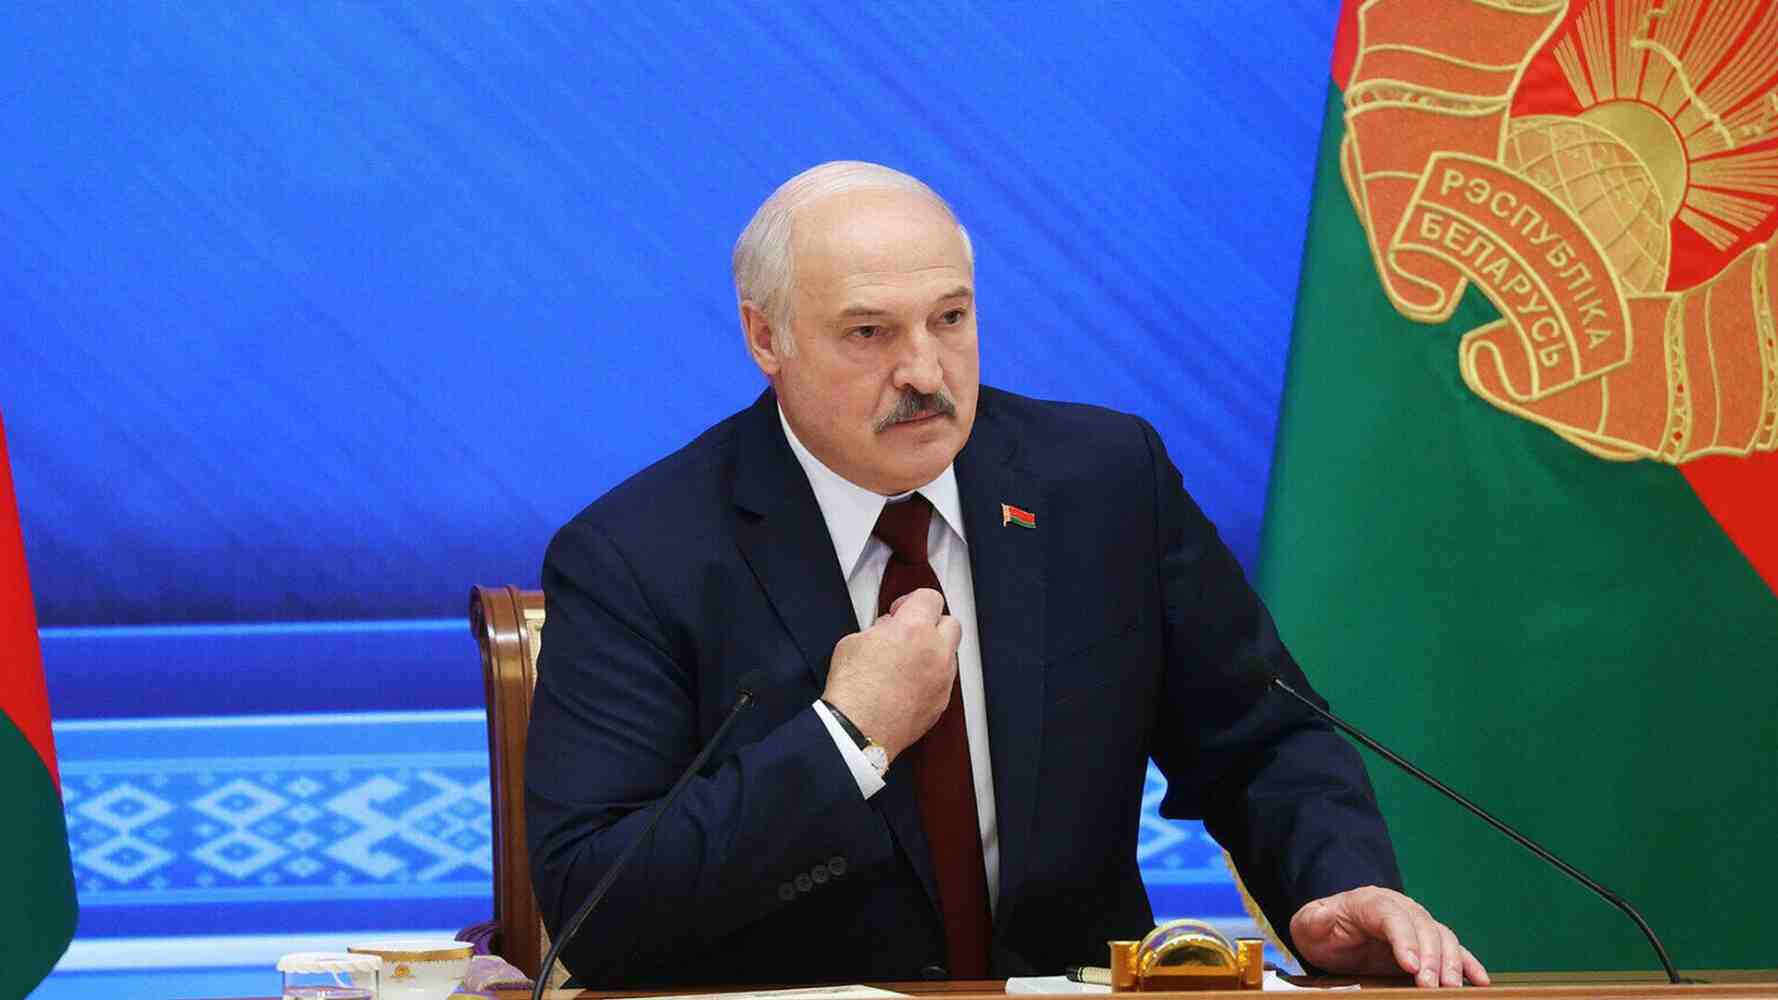 САЩ въоръжавайки Украйна, тласкат Русия да използва по-мощни оръжия - Лукашенко